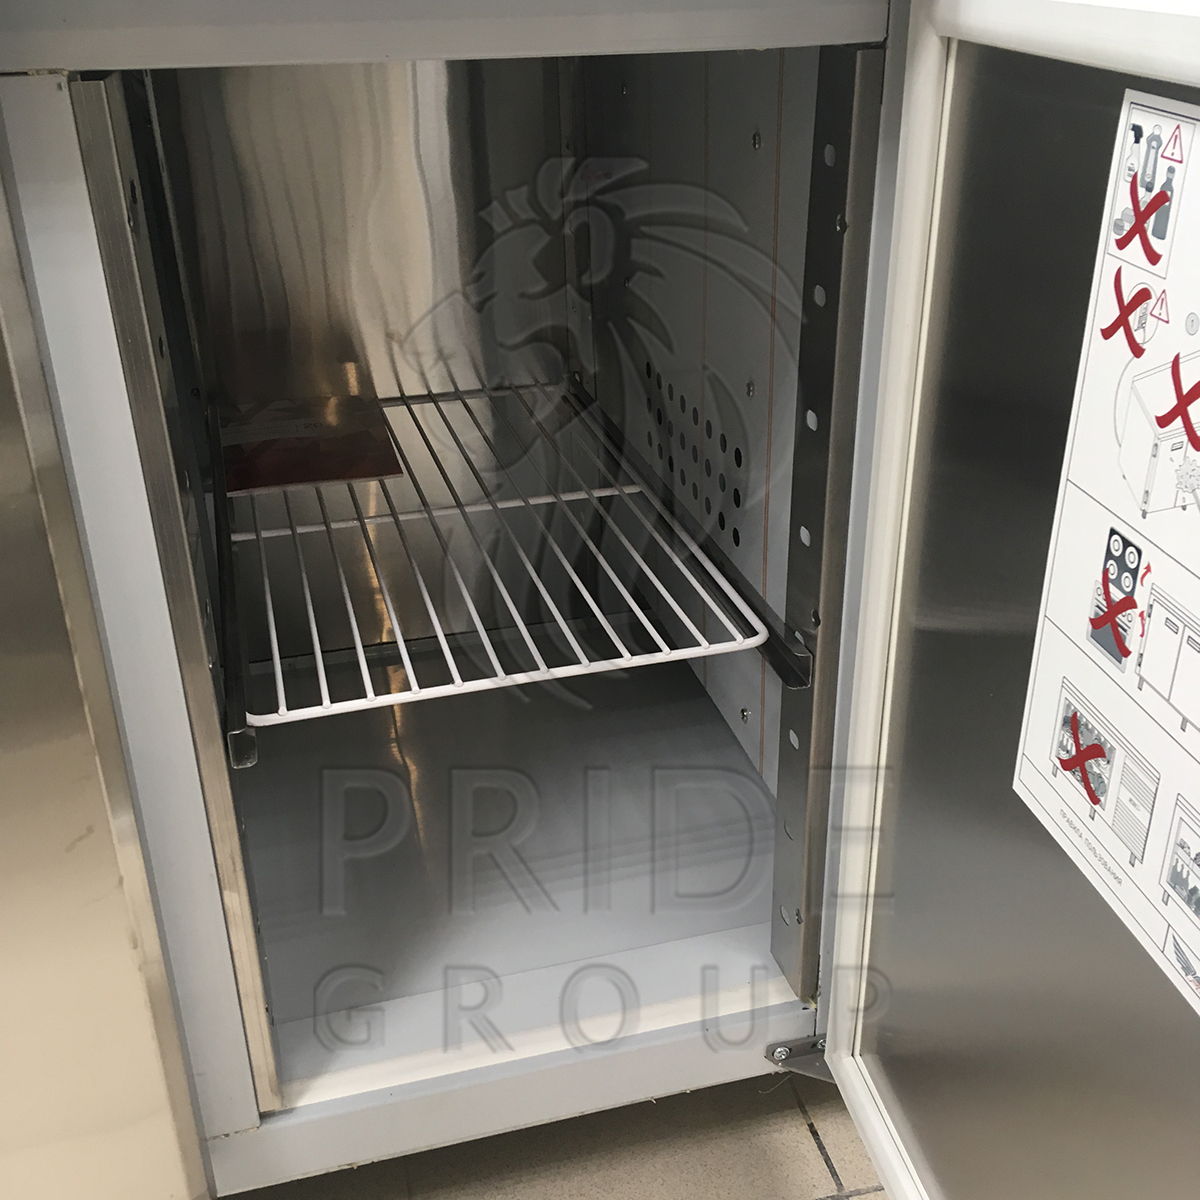 Стол холодильный Finist СХС-600-2 1400х600х850 мм